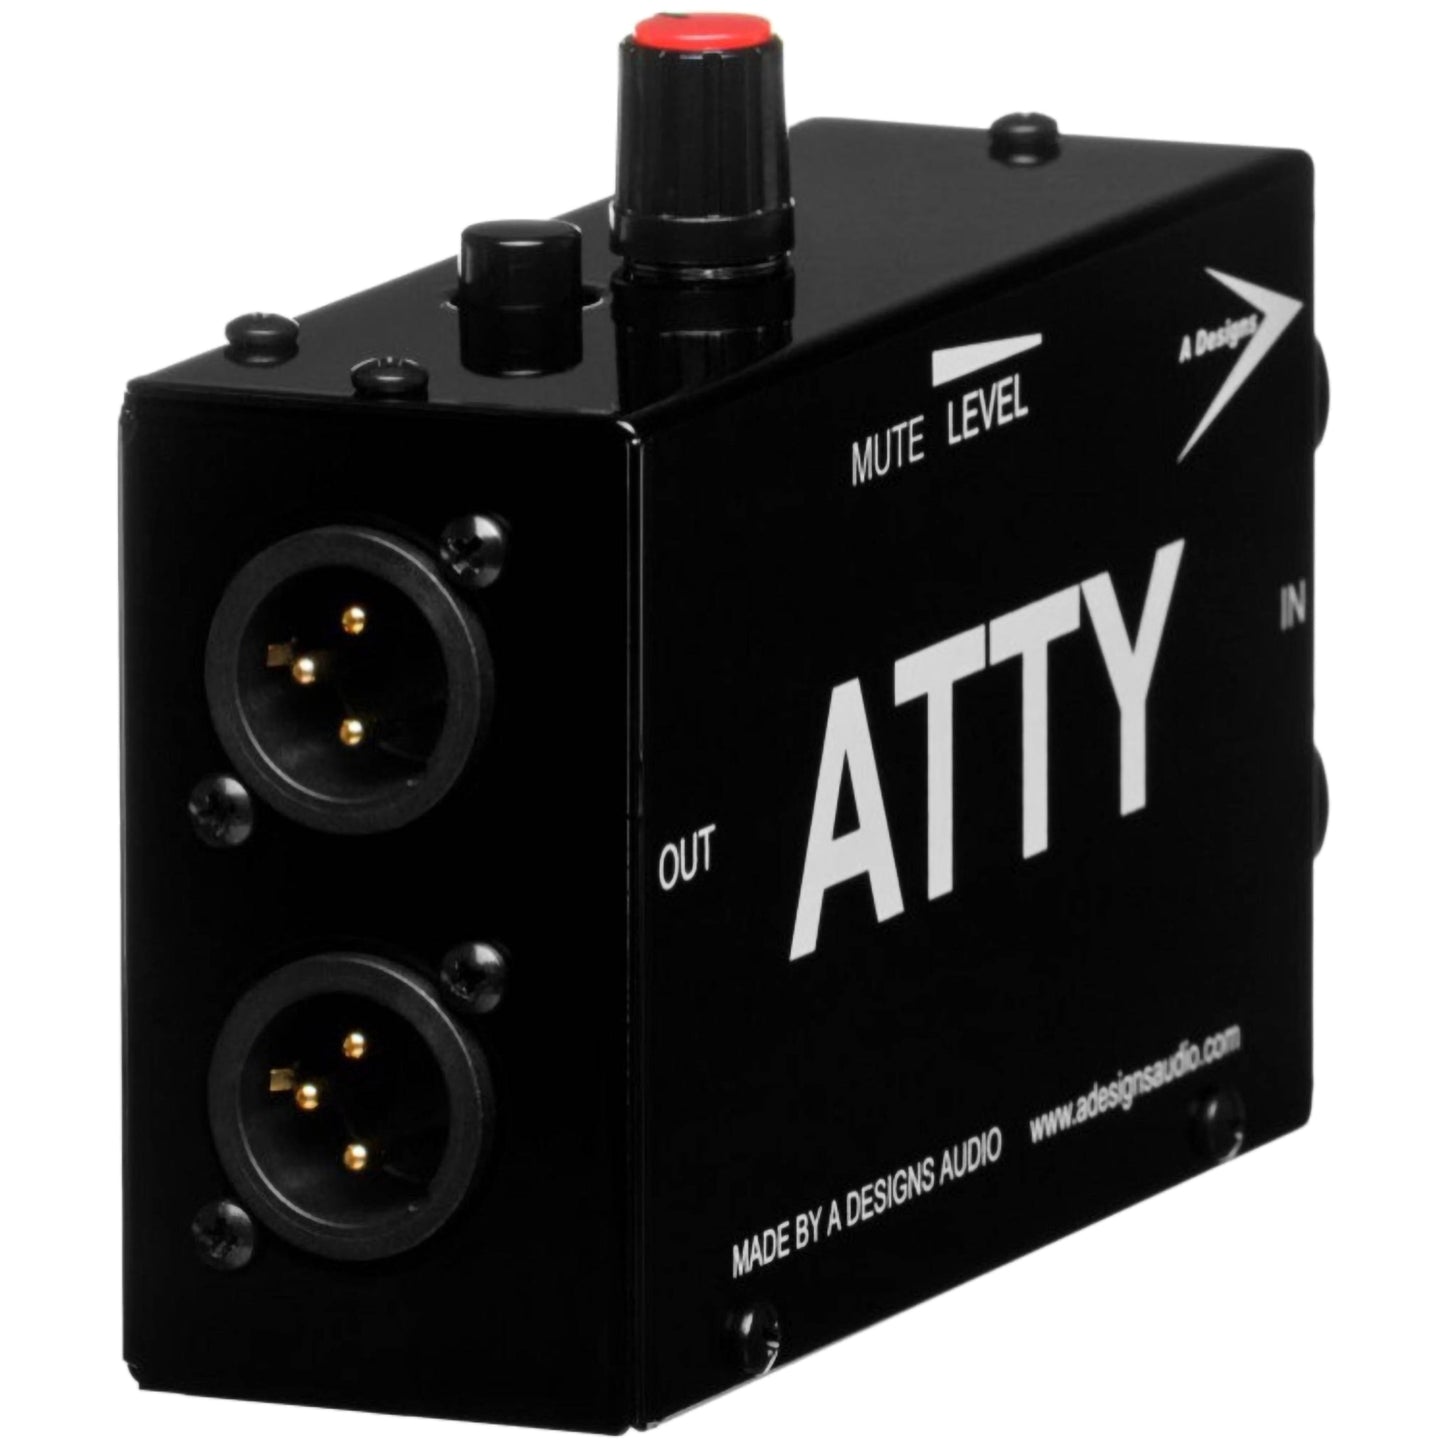 A Designs Audio ATTY Stereo Attenuator